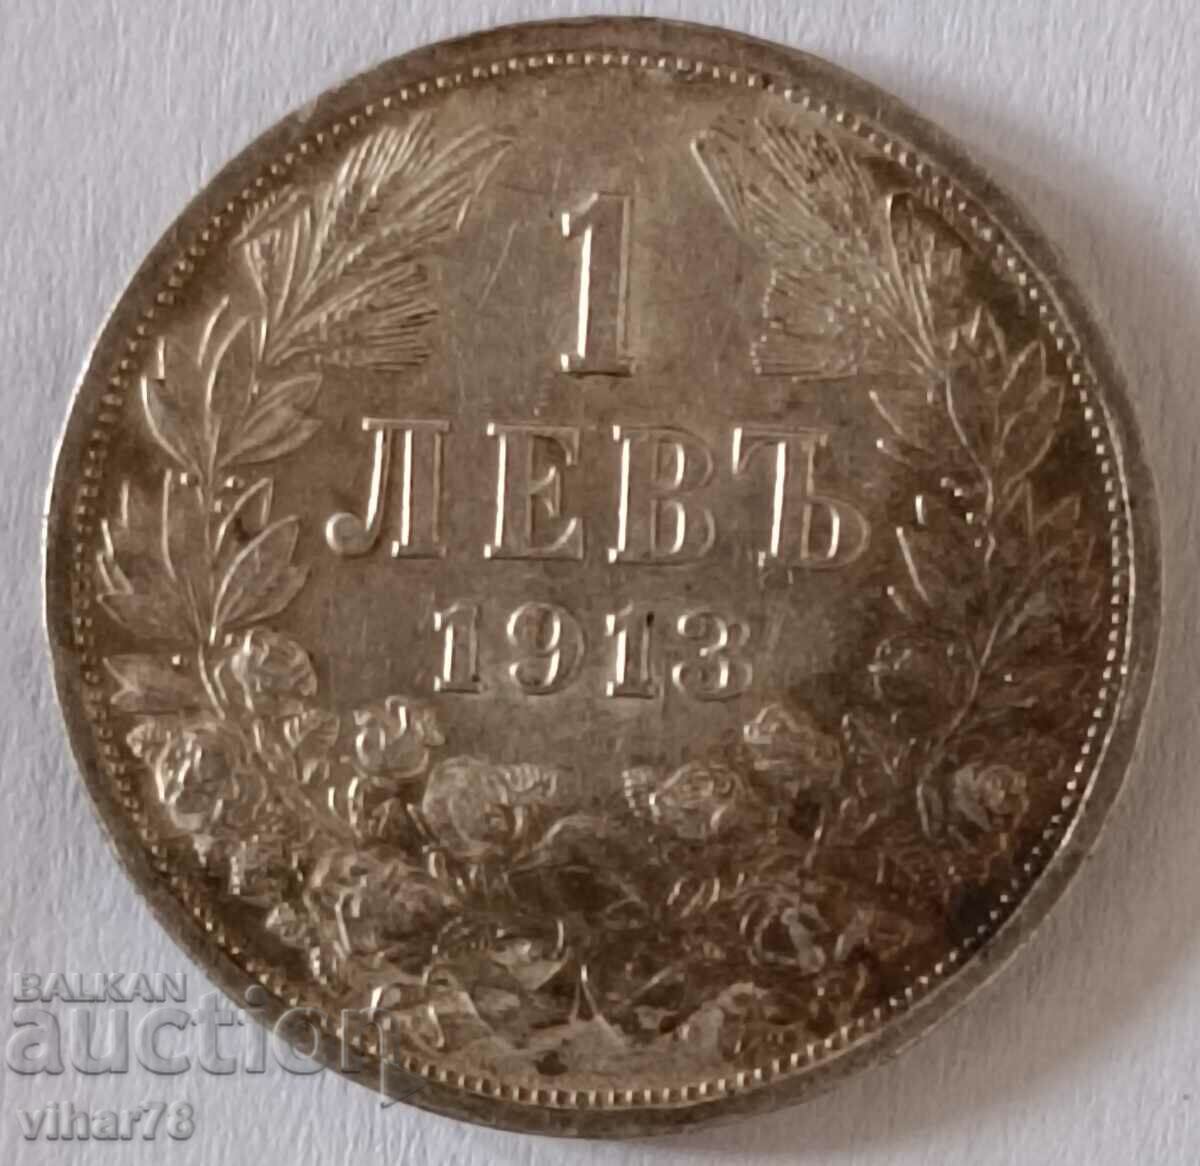 ΑΣΗΜΕΝΙΟ ΚΕΡΜΑ ΤΟΥ 1 ΛΕΥΡΟΥ 1913